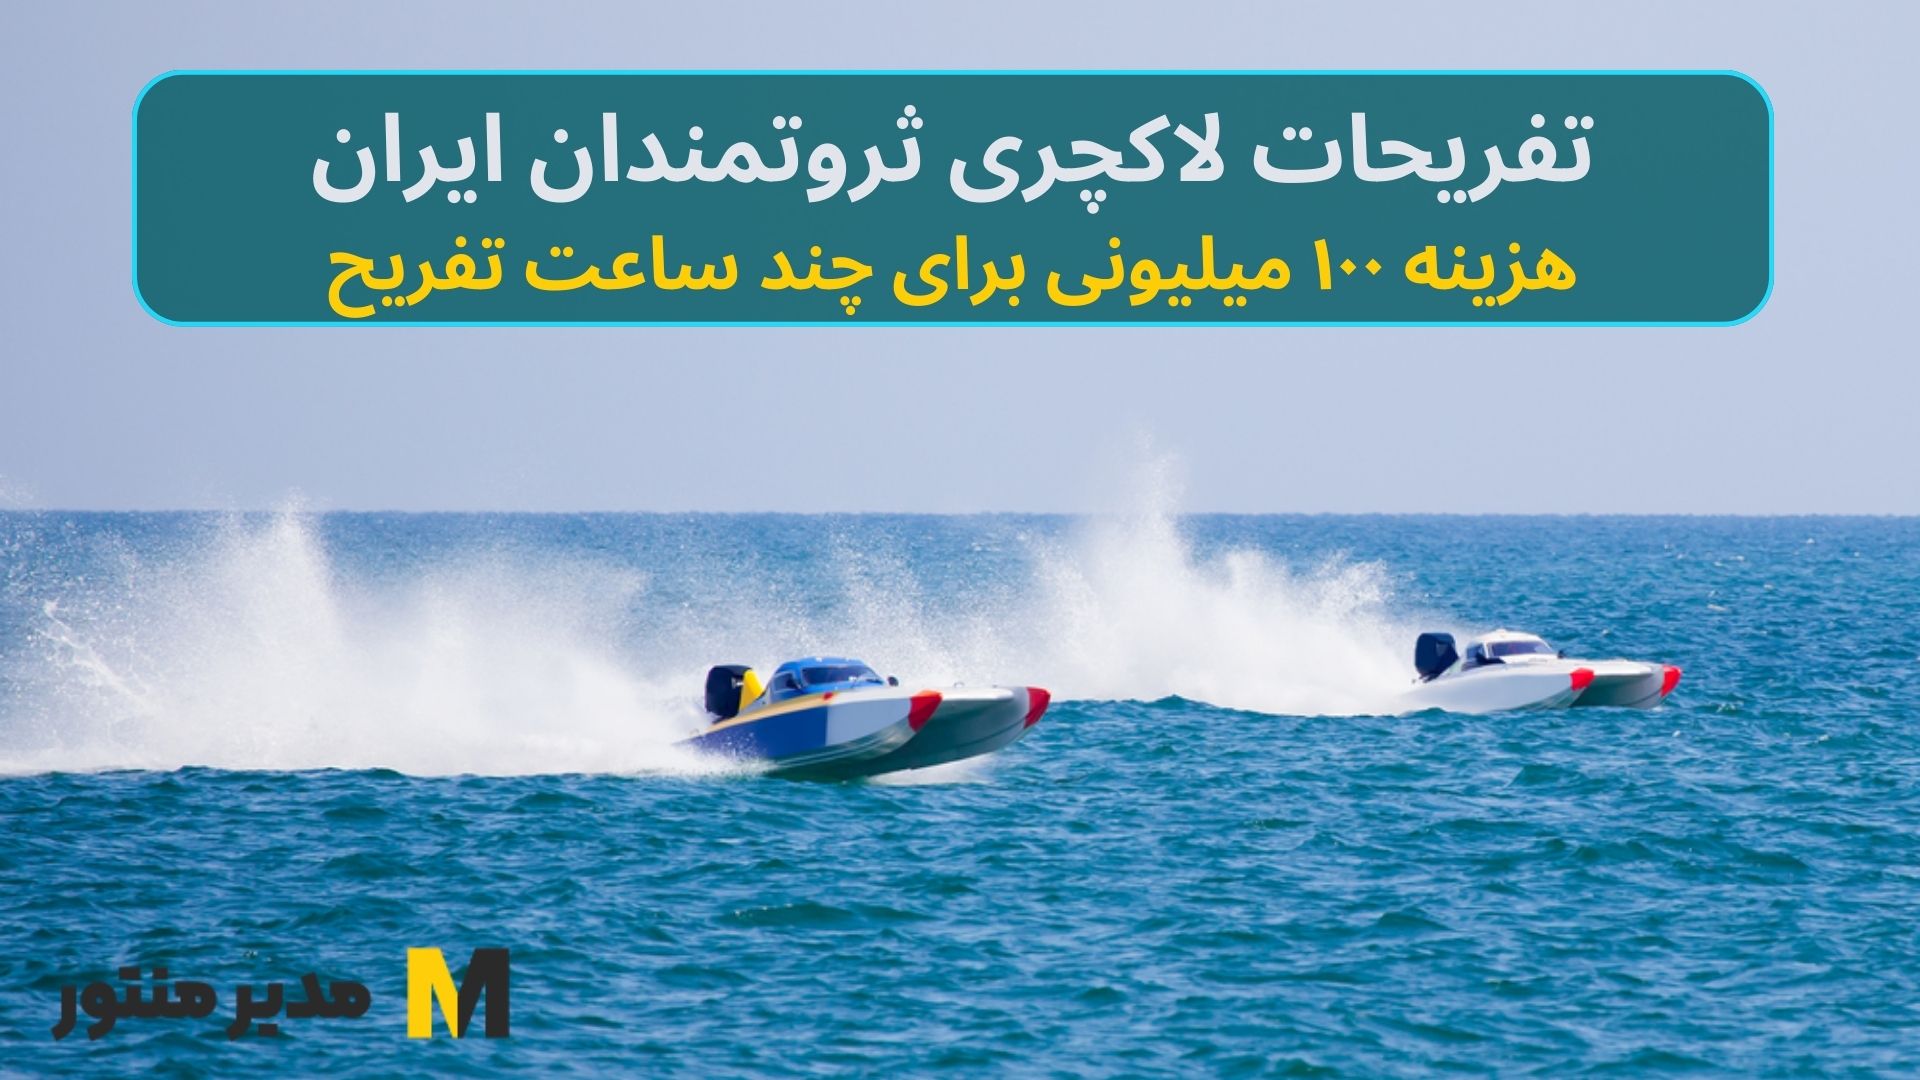 تفریحات لاکچری ثروتمندان ایران / هزینه ۱۰۰ میلیونی برای چند ساعت تفریح